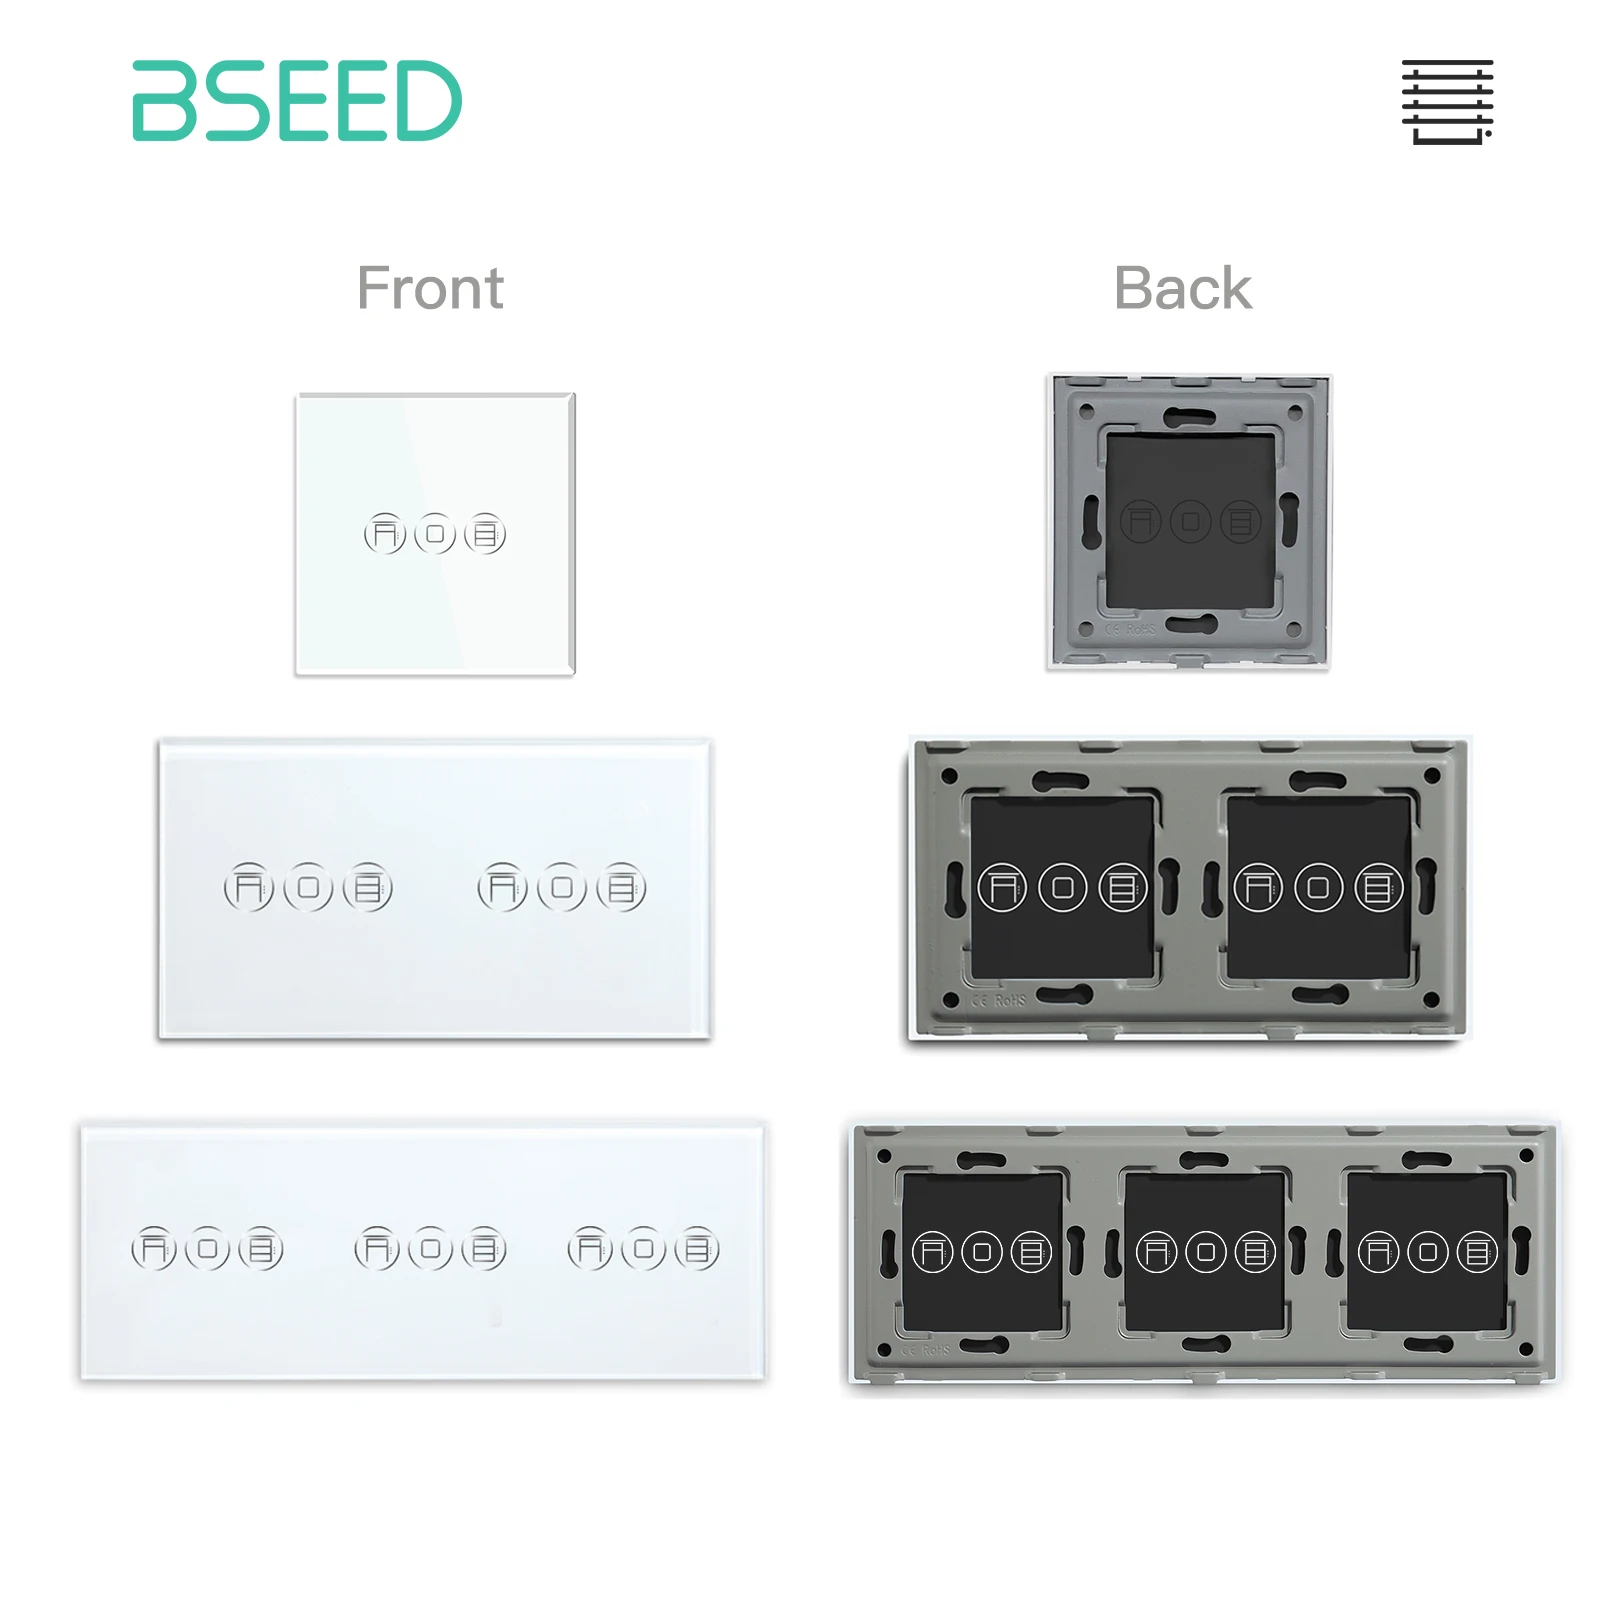 BSEED-Panel de vidrio de pared para persiana enrollable inteligente táctil, marco de Metal incluido, solo piezas de bricolaje estándar de la UE